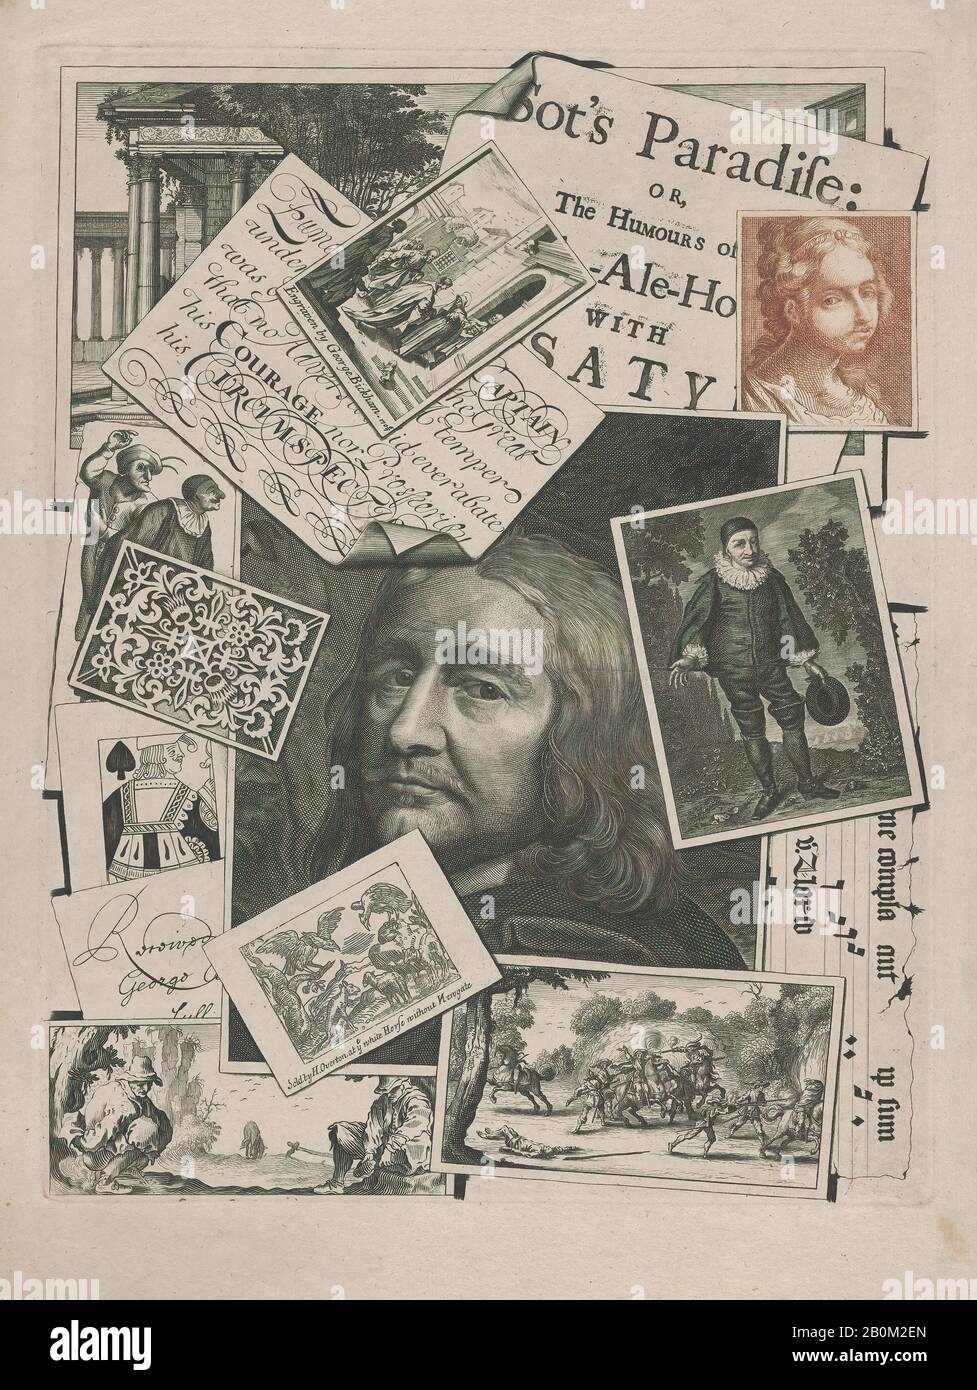 George Bickham, Sr., Medley impresión: SOT's Paradise, George Bickham, Sr. (británico, Londres 1684–1758 Londres), 1706–7, grabado y grabado, impreso en tinta negra y roja, placa: 11 5/16 x 8 11/16 pulg. (28.7 x 22.1 cm), hoja: 13 1/4 x 9 3/4 pulg. (33.6 x 24.7 cm), copias Foto de stock